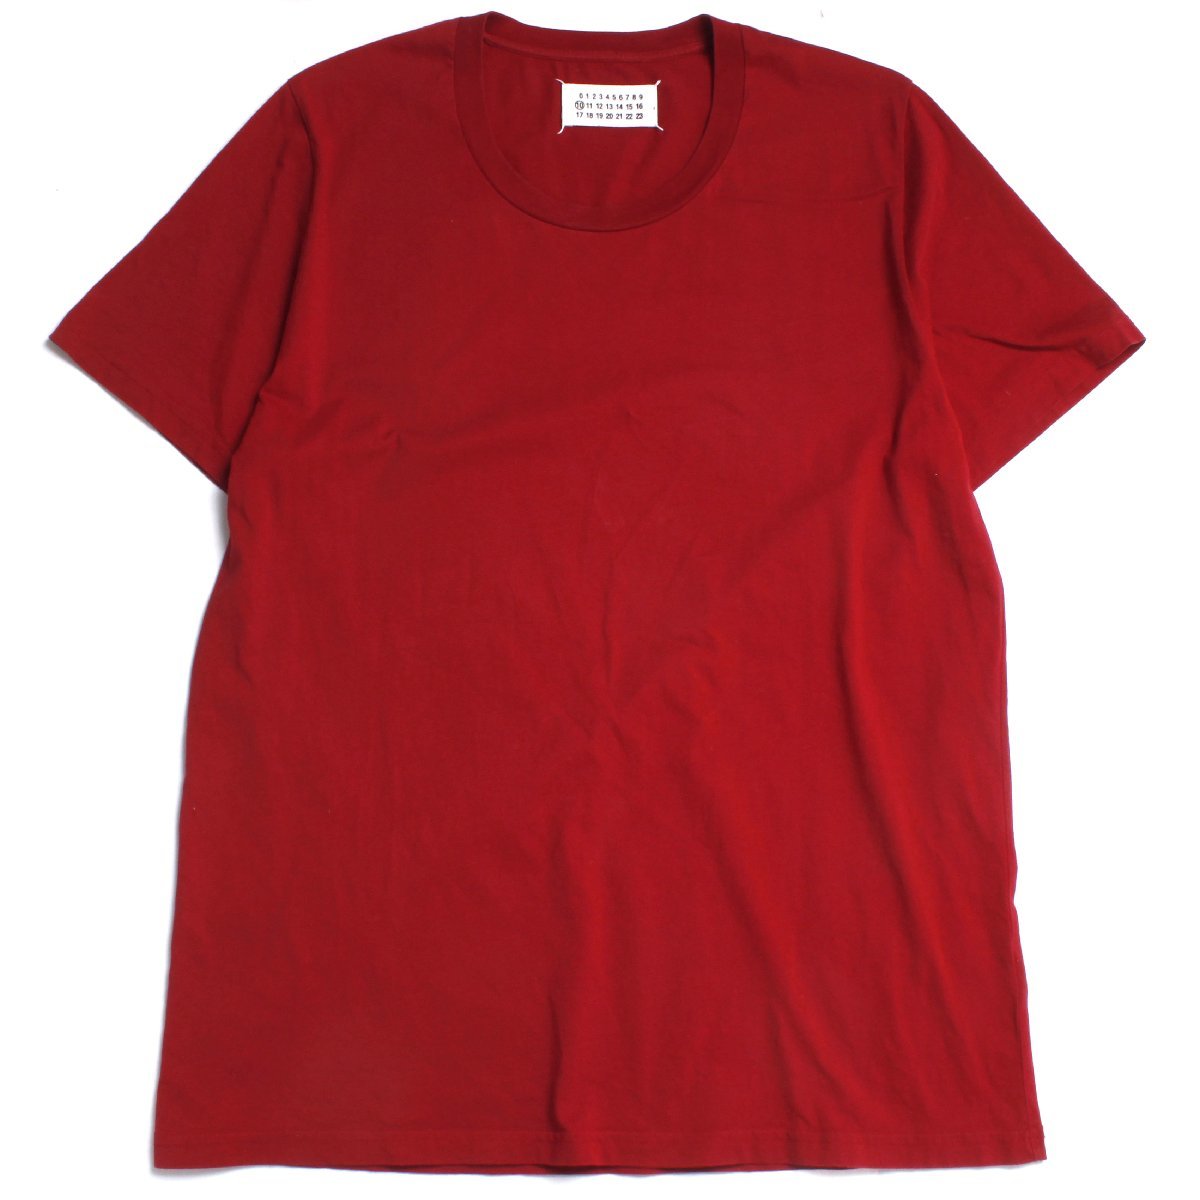 Maison Margiela 10 Crew neck Tee size52 RED メゾン マルジェラ クルーネック 半袖 Tシャツ